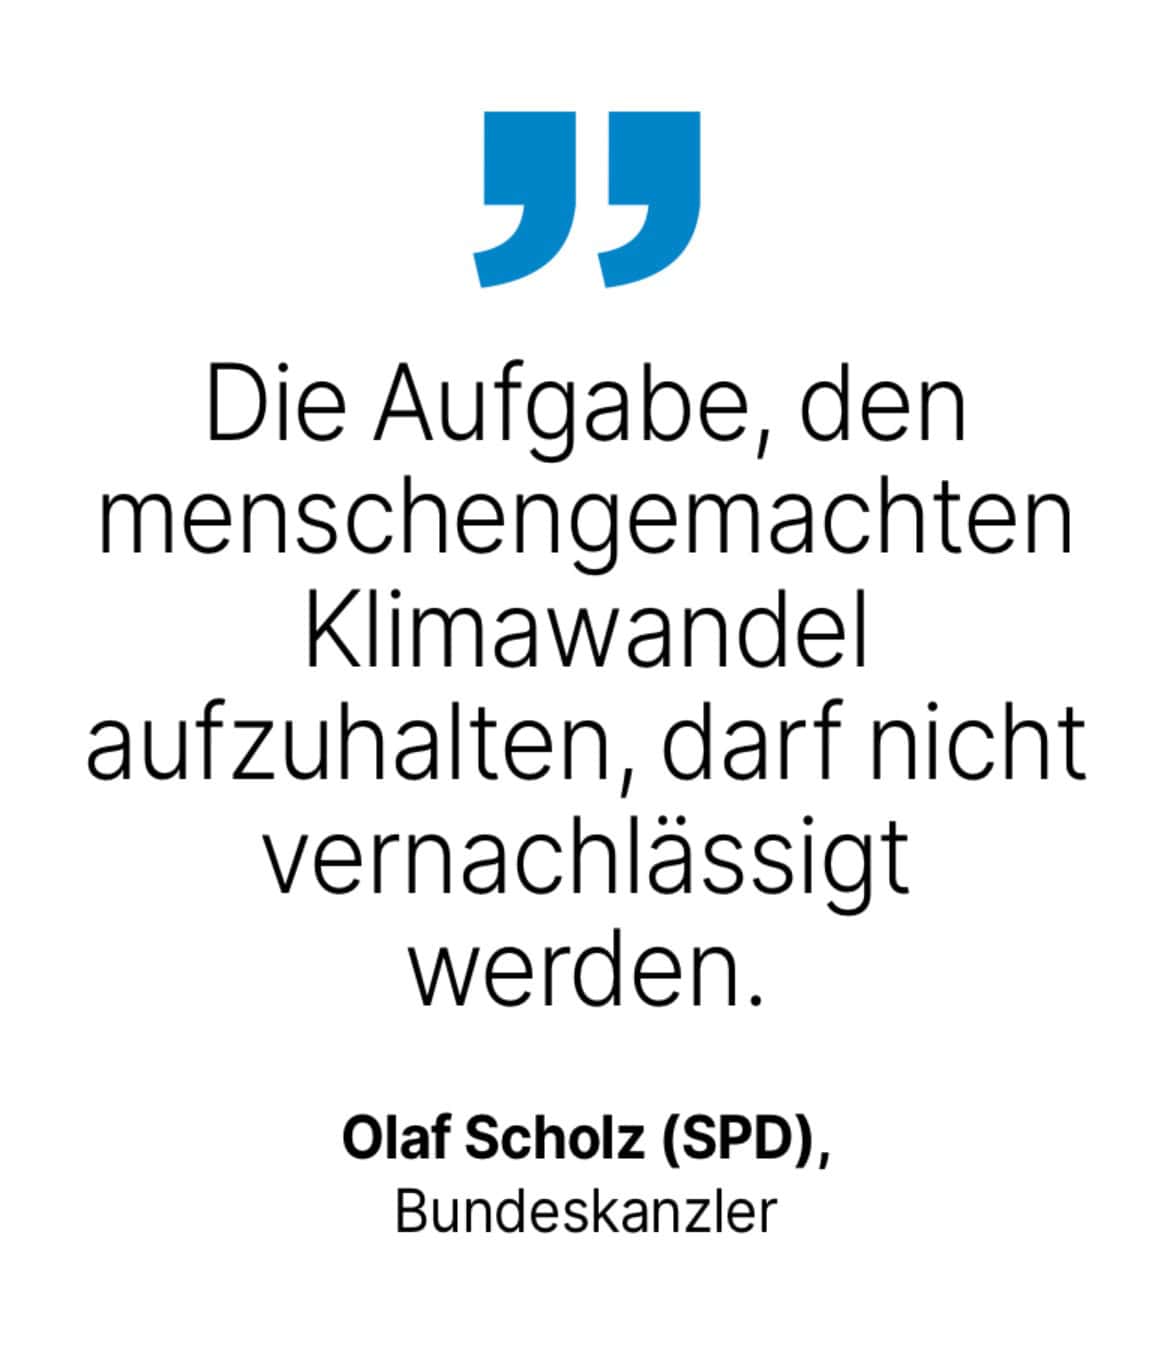 Olaf Scholz (SPD), Bundeskanzler: Die Aufgabe, den menschengemachten Klimawandel aufzuhalten, darf nicht vernachlässigt werden.